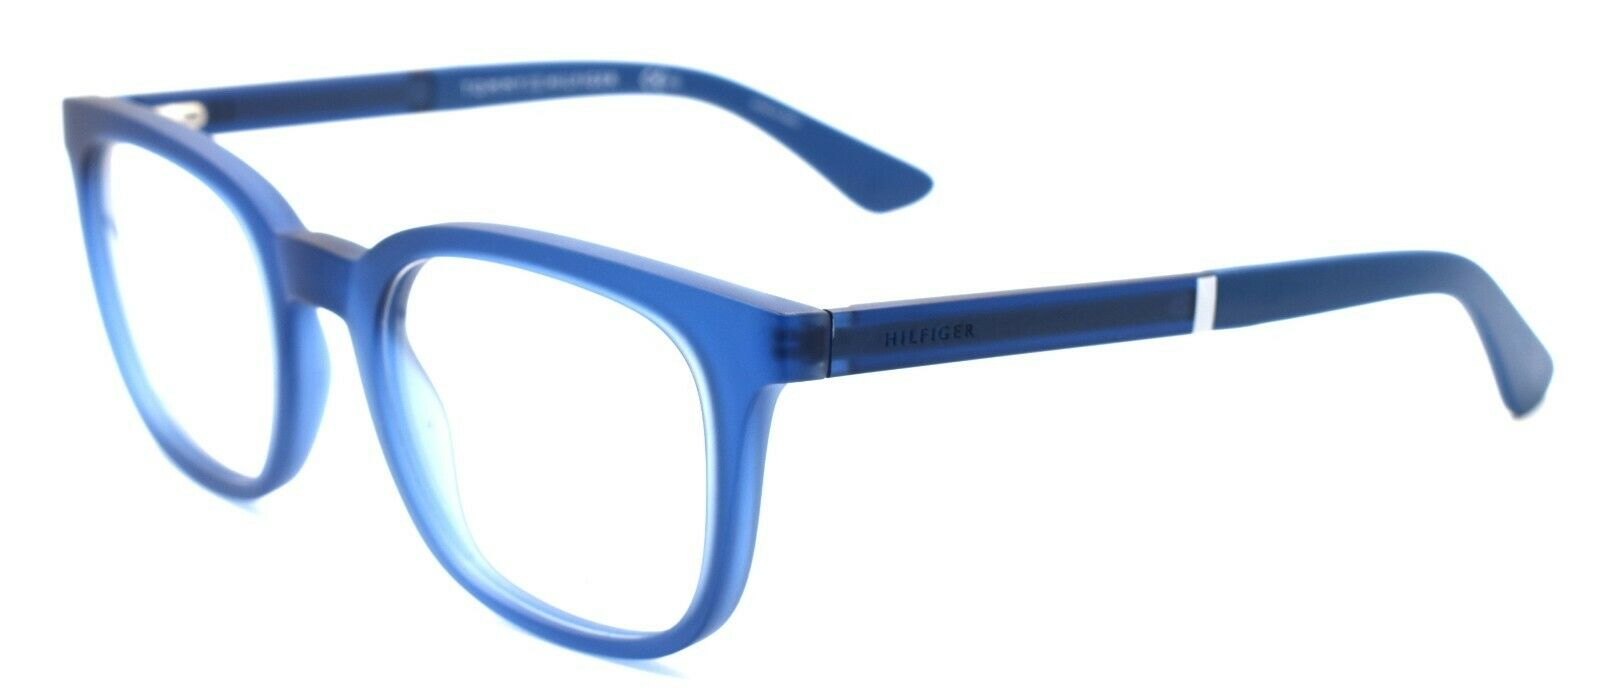 1-TOMMY HILFIGER TH 1477 GEG Men's Eyeglasses Frames 50-21-145 Transparent Blue-762753618115-IKSpecs